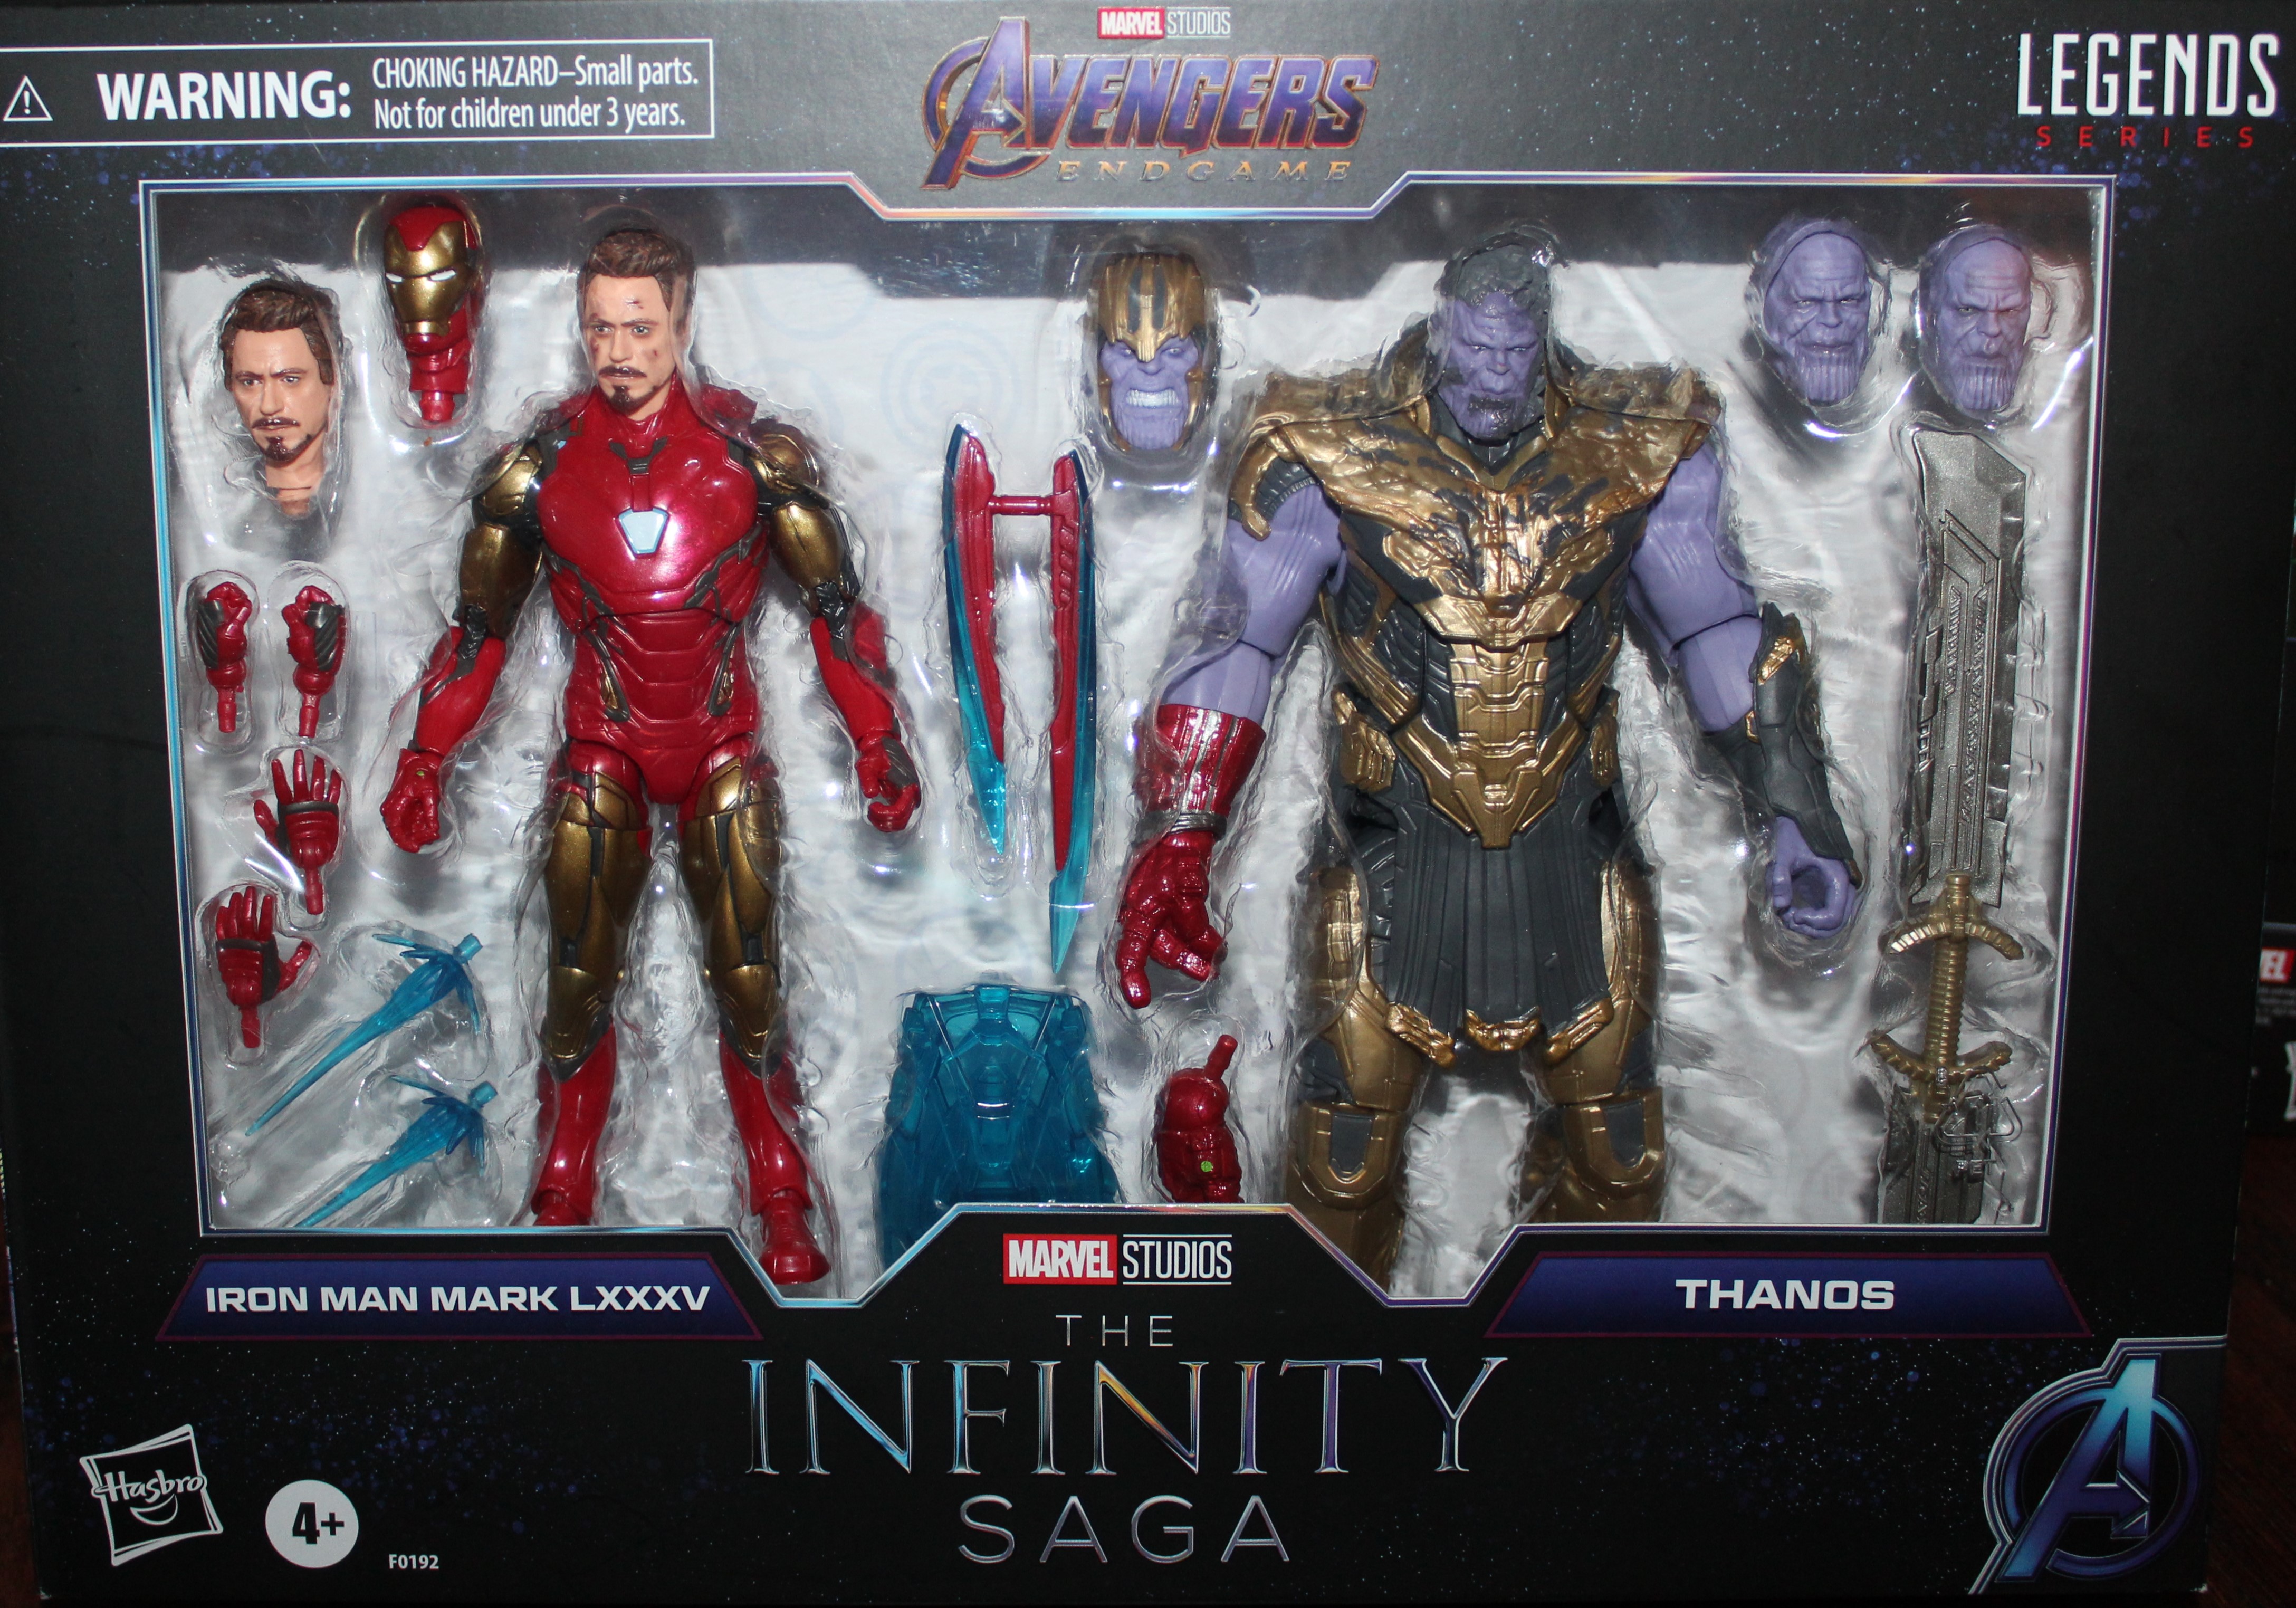 Iron Man and Thanos